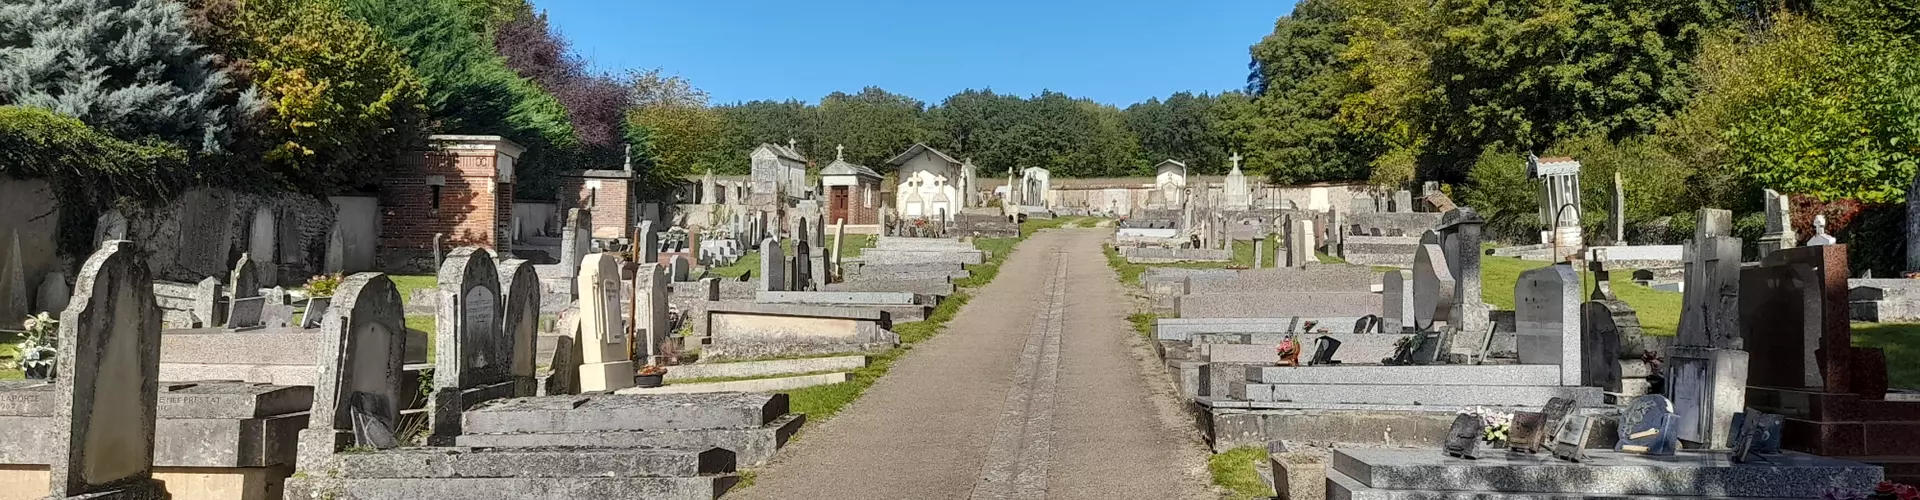 Modalité et gestion du cimetière de Tannerre en Puisaye - 89